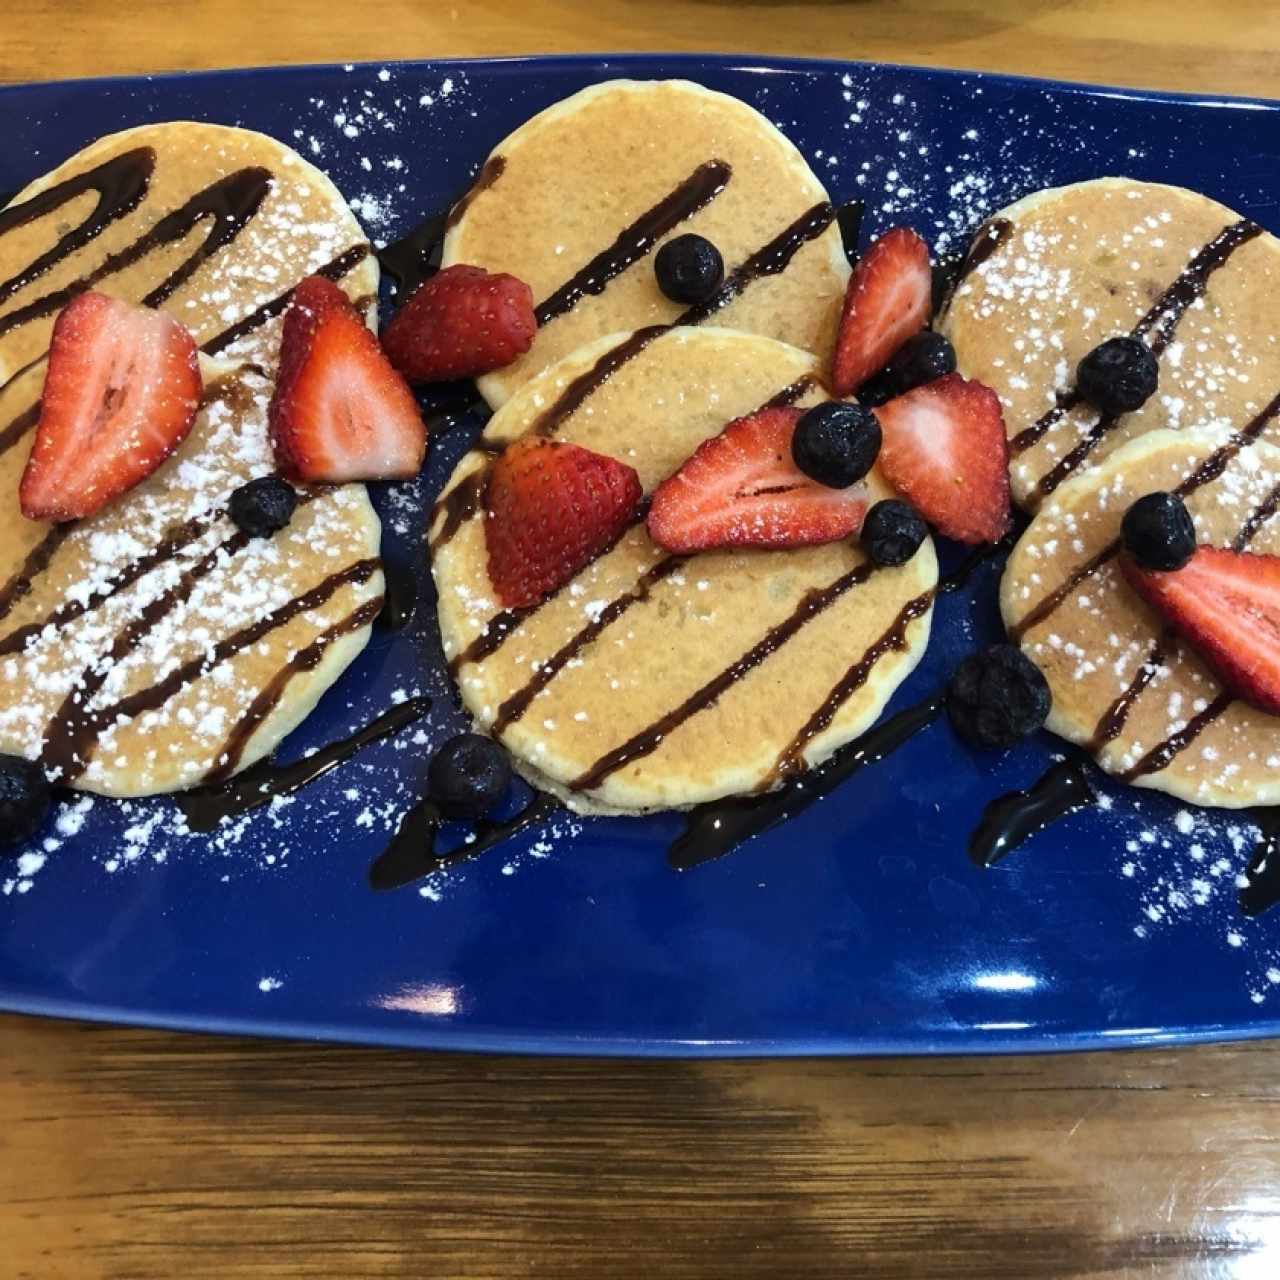 Mini Pancakes con Fresa,Blueberry y Chocolate